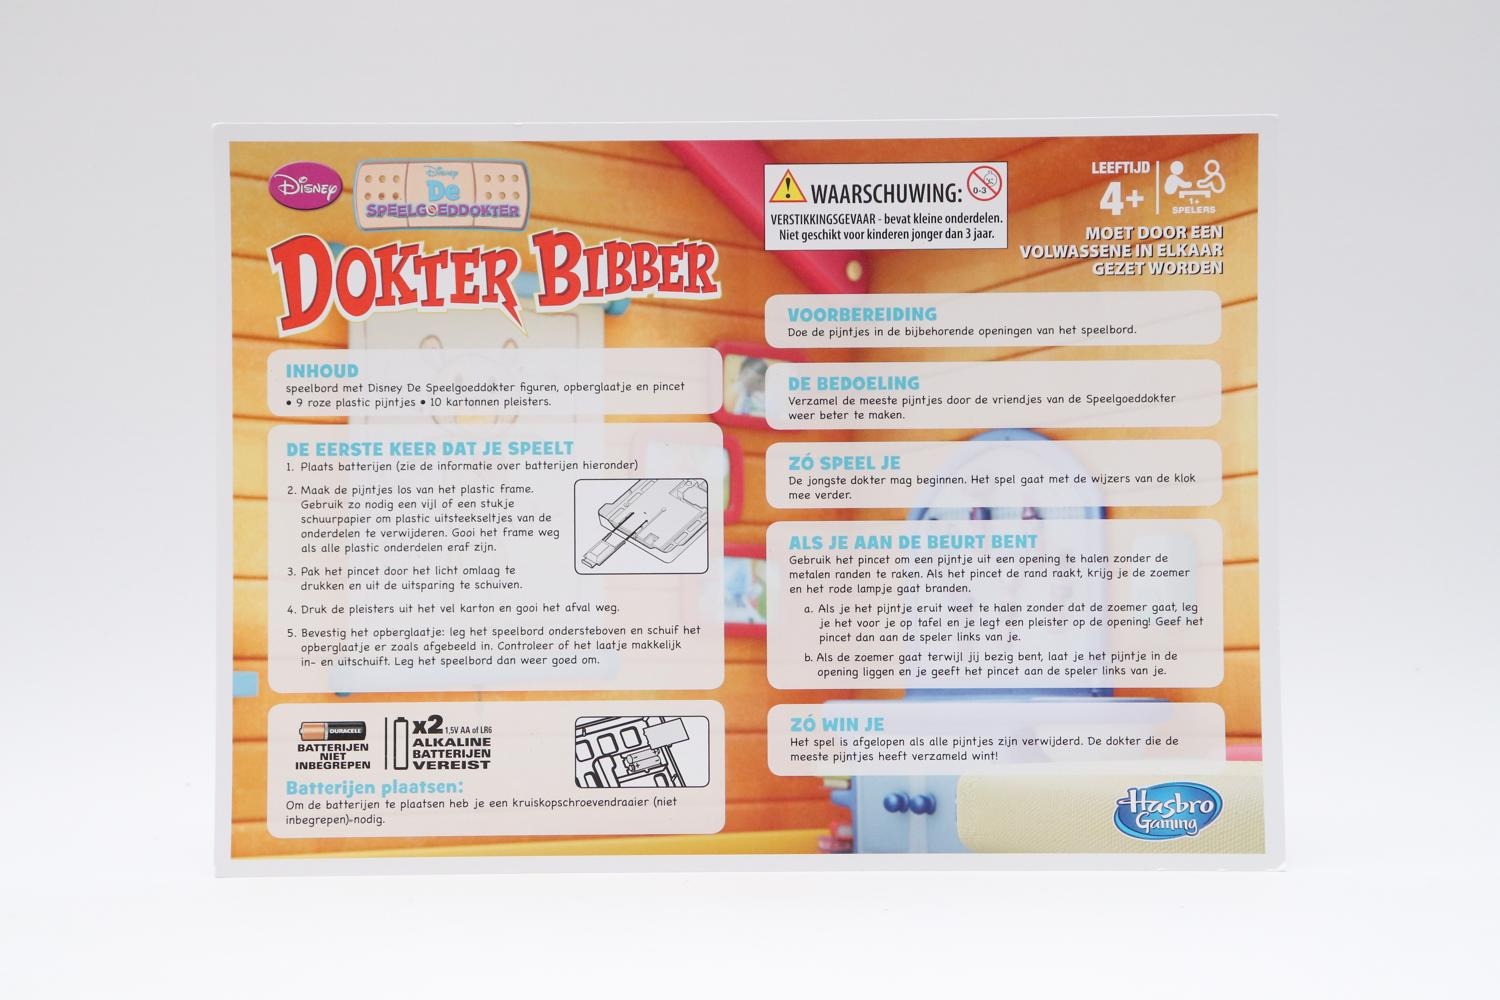 Centraliseren Belichamen diepvries Hasbro - Dokter bibber: De speelgoeddokter (Disney) - Puzzels / Spellen -  edukleuter-outlet